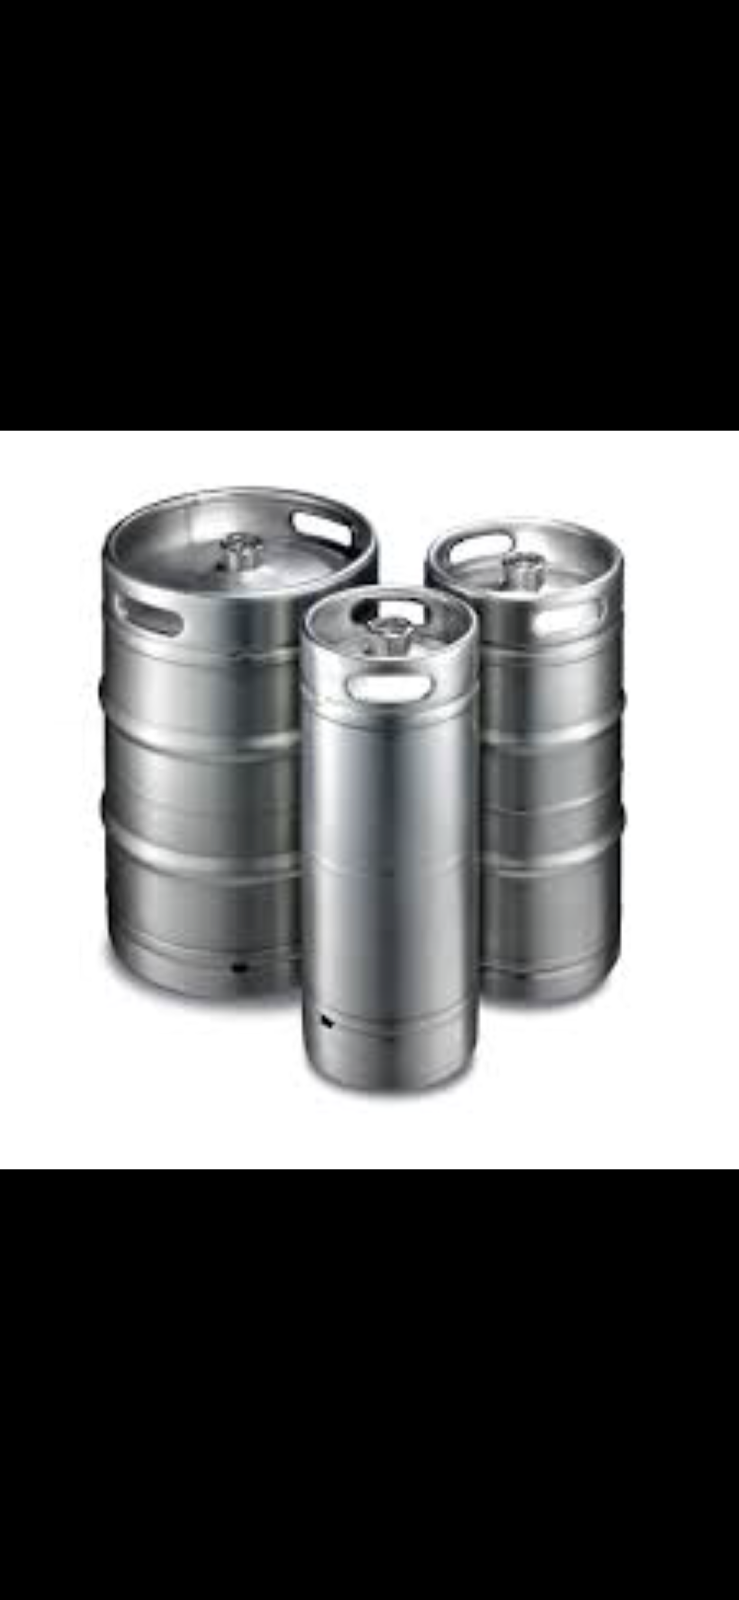 Craft beer .kegs .wine & Co2 refill in loxahatchee | 14567 Southern Blvd, Loxahatchee, FL 33470 | Phone: (561) 444-3397